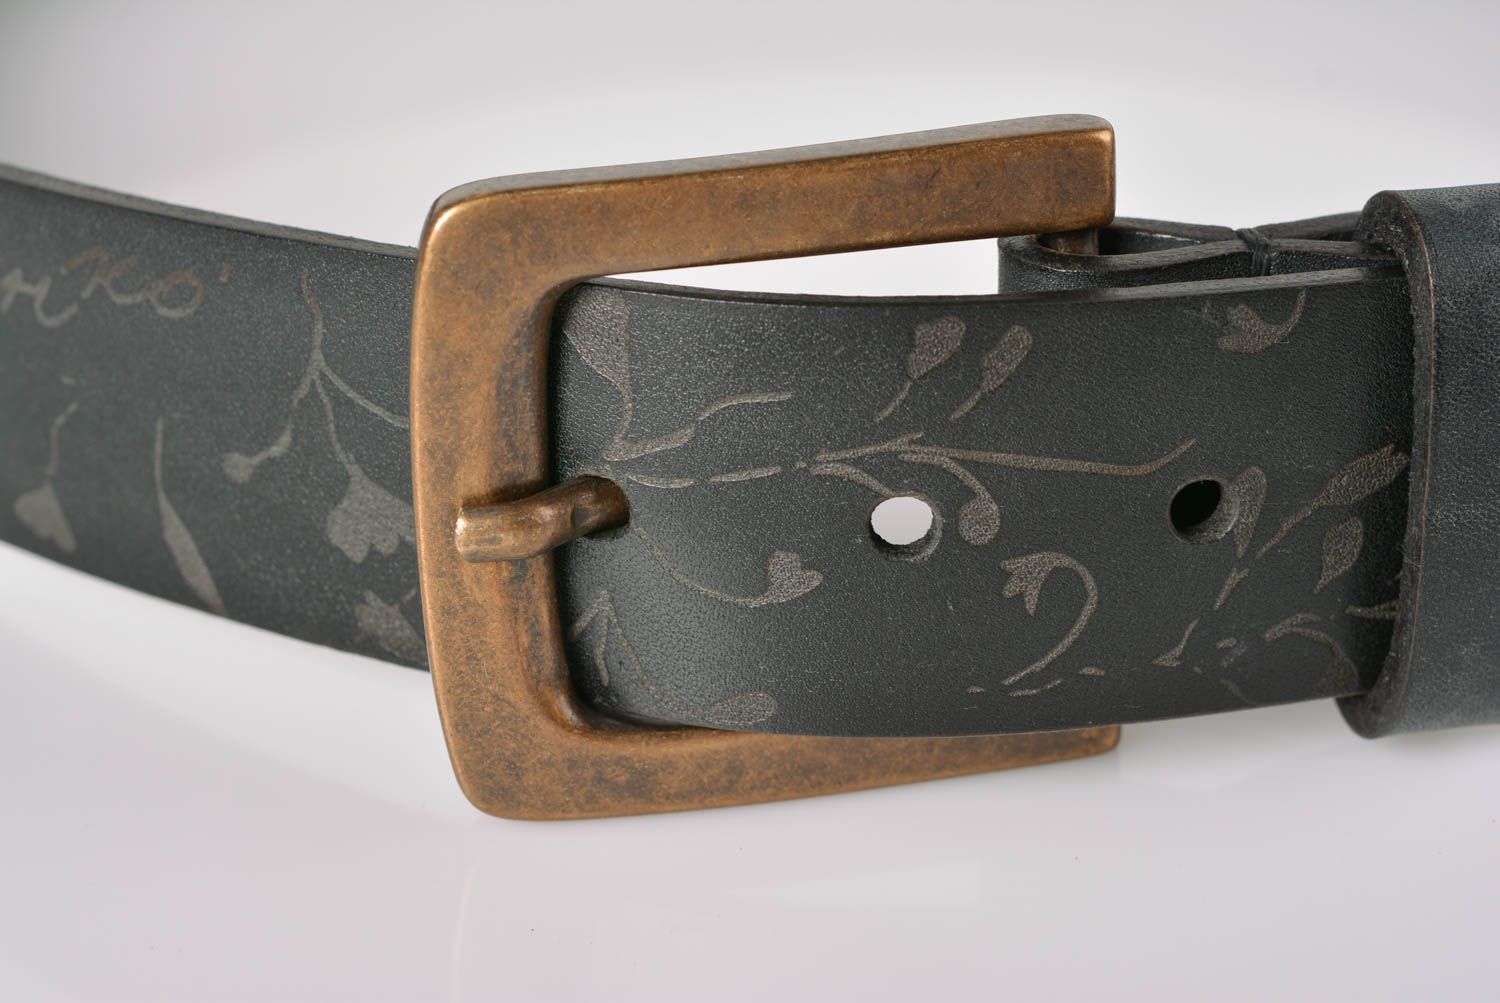 Black leather belt designer belts for men handmade leather goods gifts for him photo 2